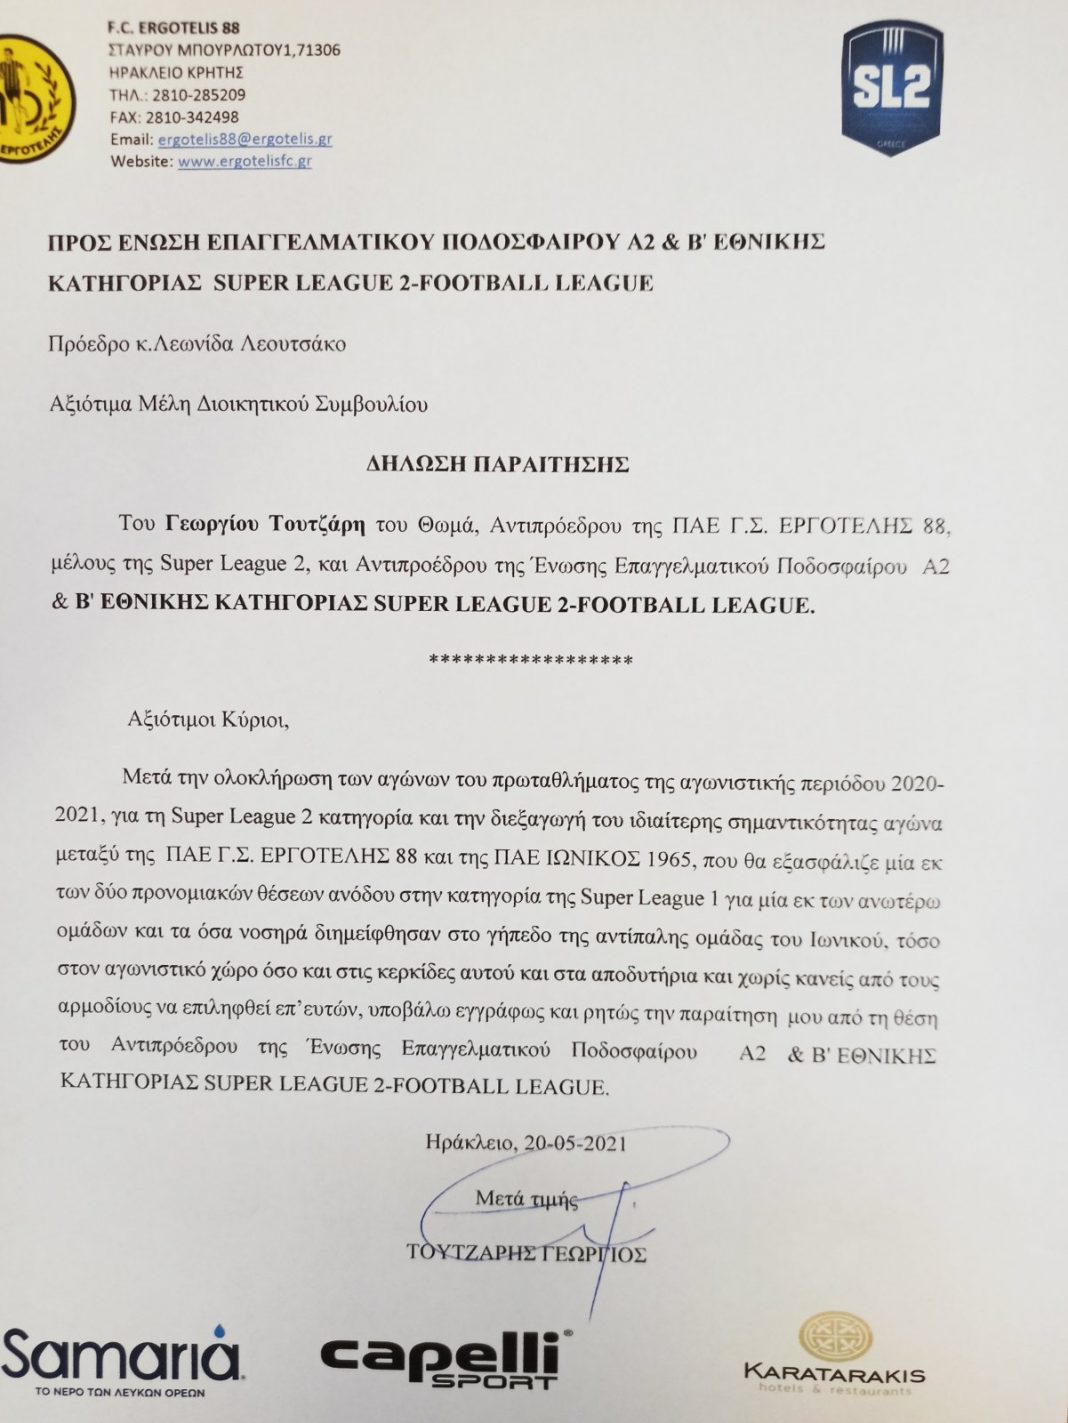 Παραίτηση Τουτζάρη με αιχμές για “νοσηρά που διημείφθησαν στο γήπεδο του Ιωνικού”